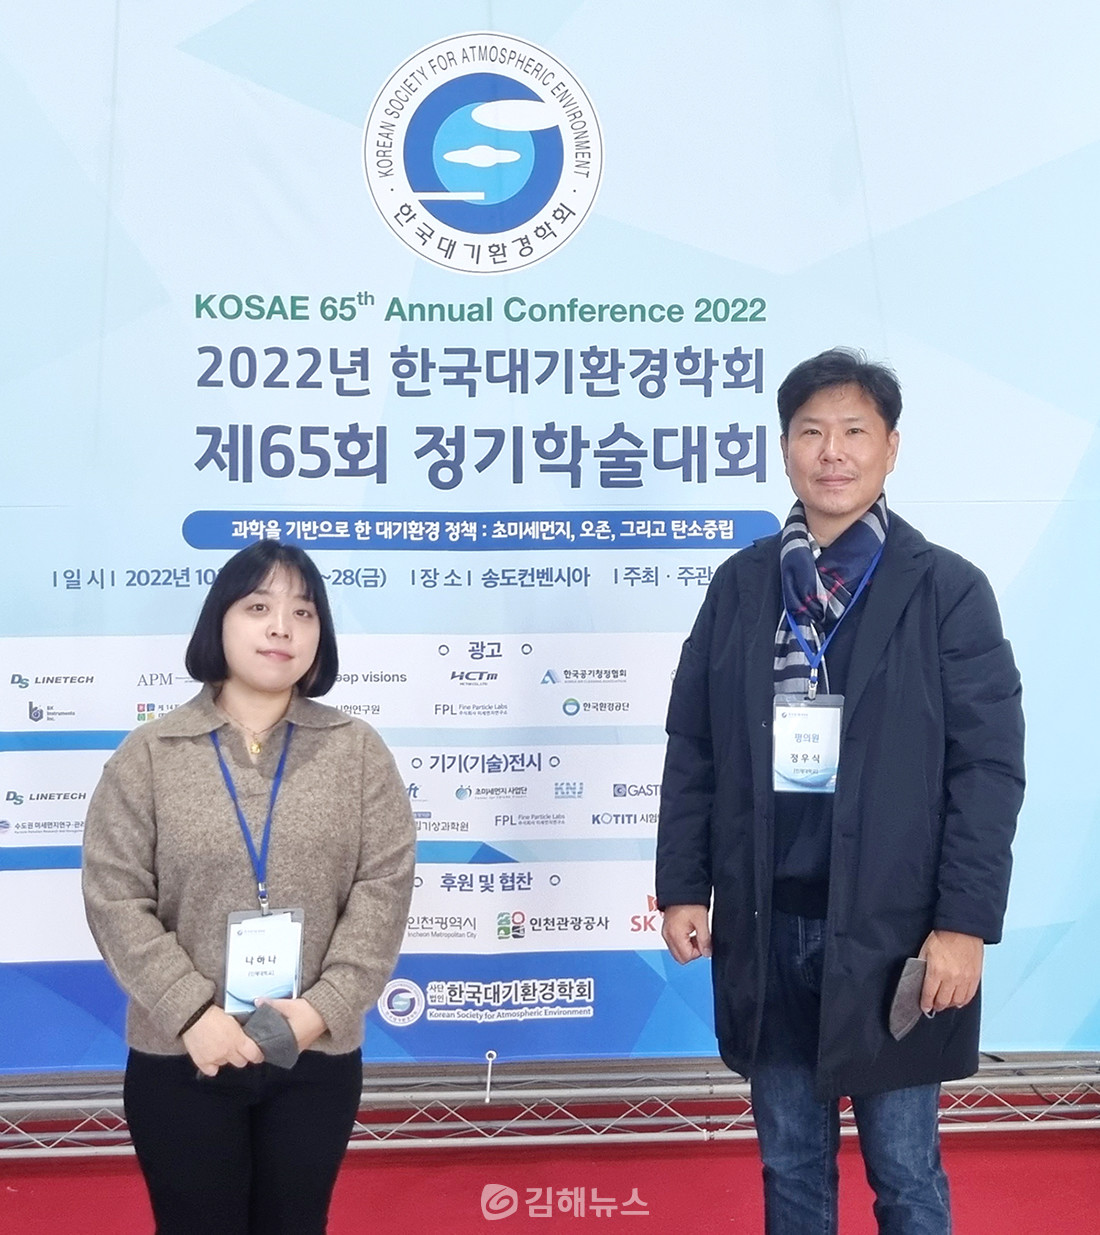 한국대기환경학회 우수발표논문상을 수상한 나하나 씨(좌)와 정우식 교수(우)